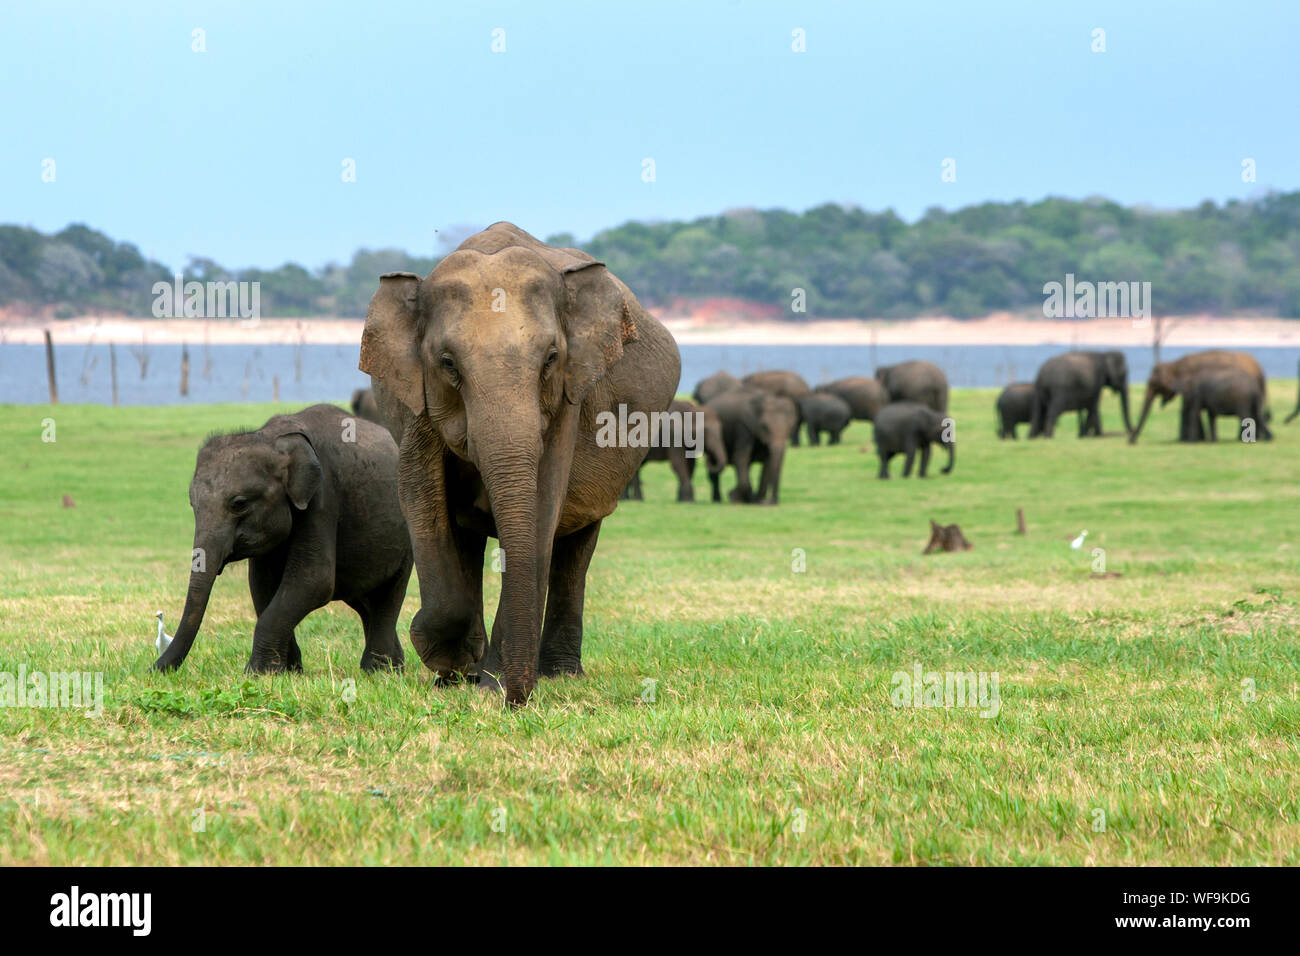 Un elefante vaca con su ternero alimentándose de hierba adyacente al depósito (depósito) en el Parque Nacional de Kaudulla en Sri Lanka. Foto de stock